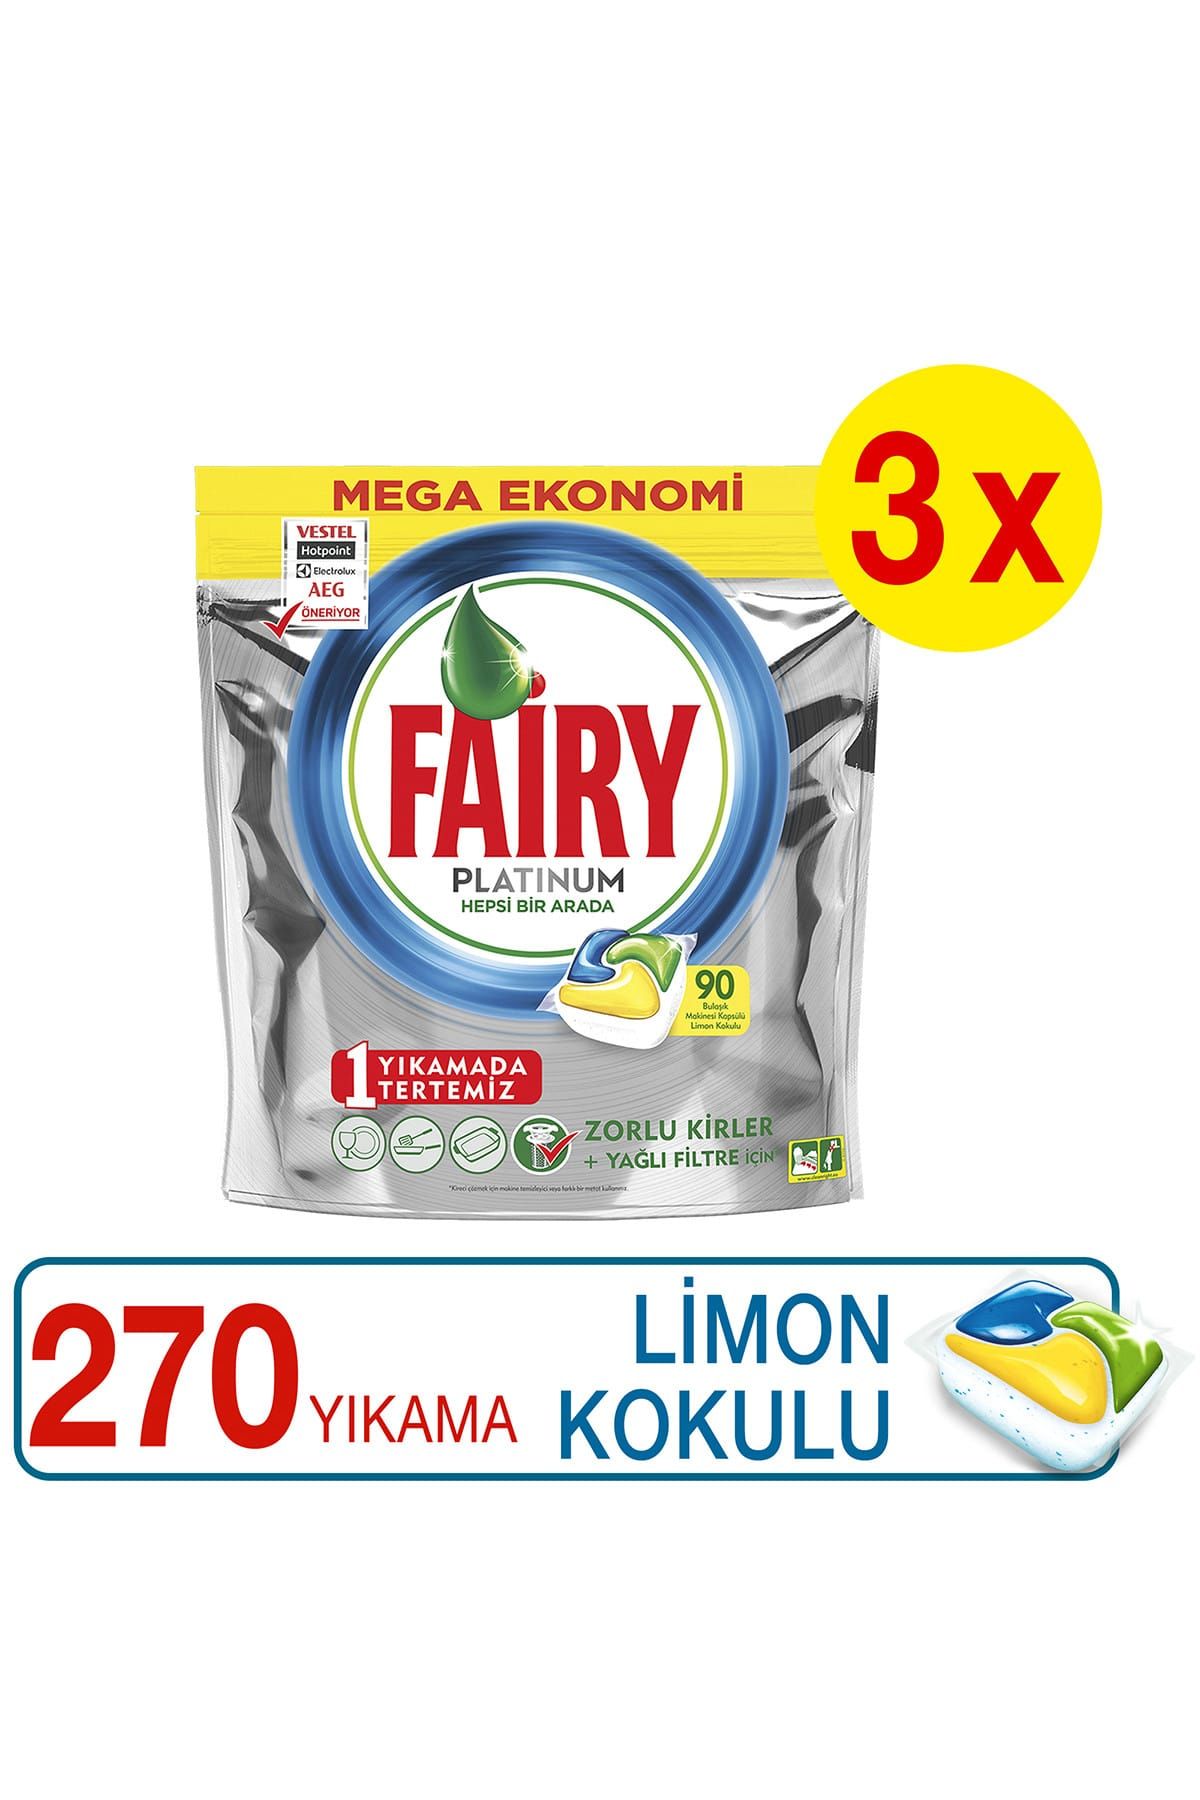 Fairy Platinum Bulaşık Makinesi Deterjanı Kapsülü Limon Kokulu 90*3 (270 Yıkama)